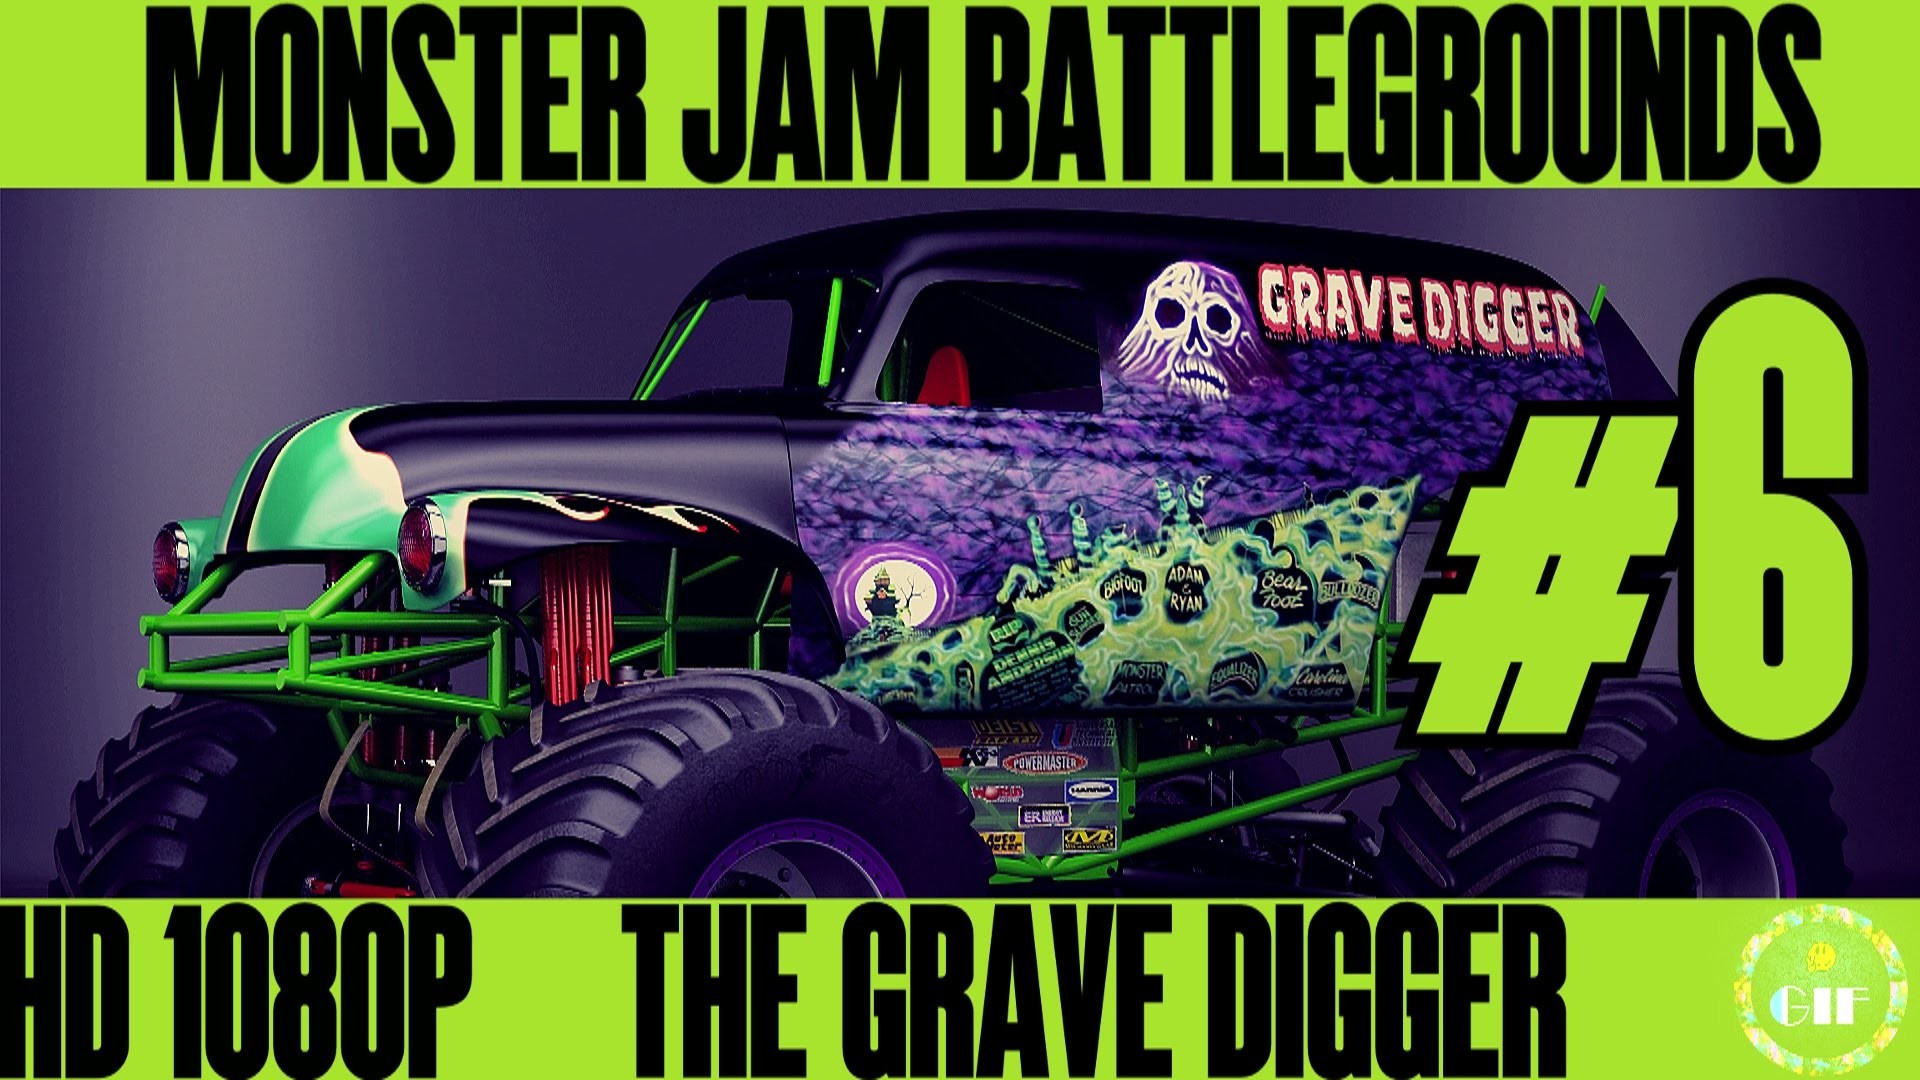 Grave Digger Monster Truck Wallpaper (54+ images)